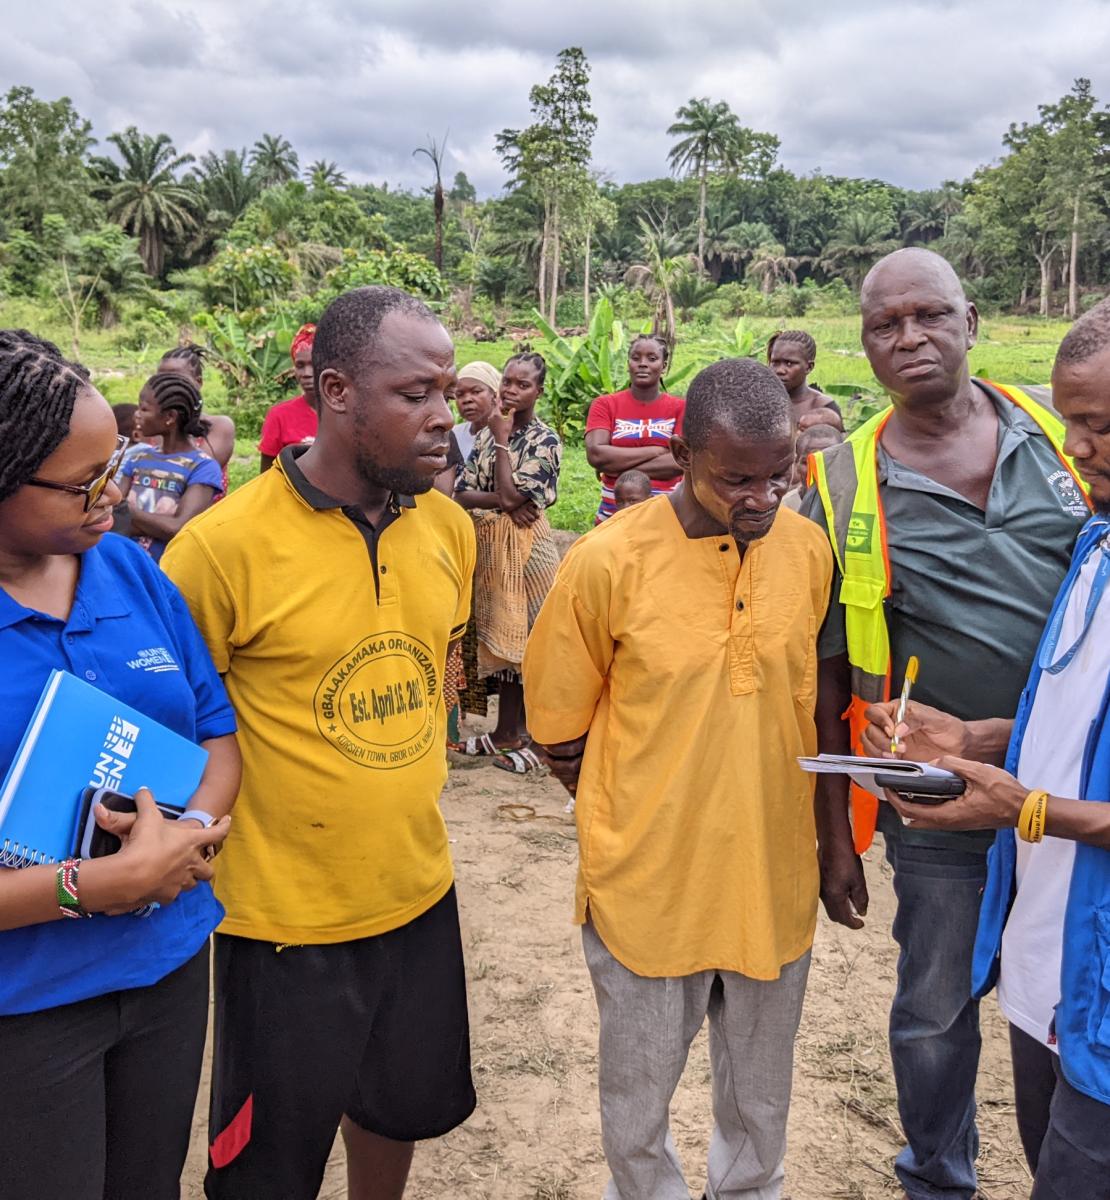 Au Libéria, à la lisière d'une forêt, deux hommes portant des t-shirts jaunes et une femme membre du personnel d'ONU Femmes regardent un troisième homme, membre du personnel du PAM, prendre des notes dans un cahier, tandis que plusieurs autres personnes se tiennent debout derrière eux.